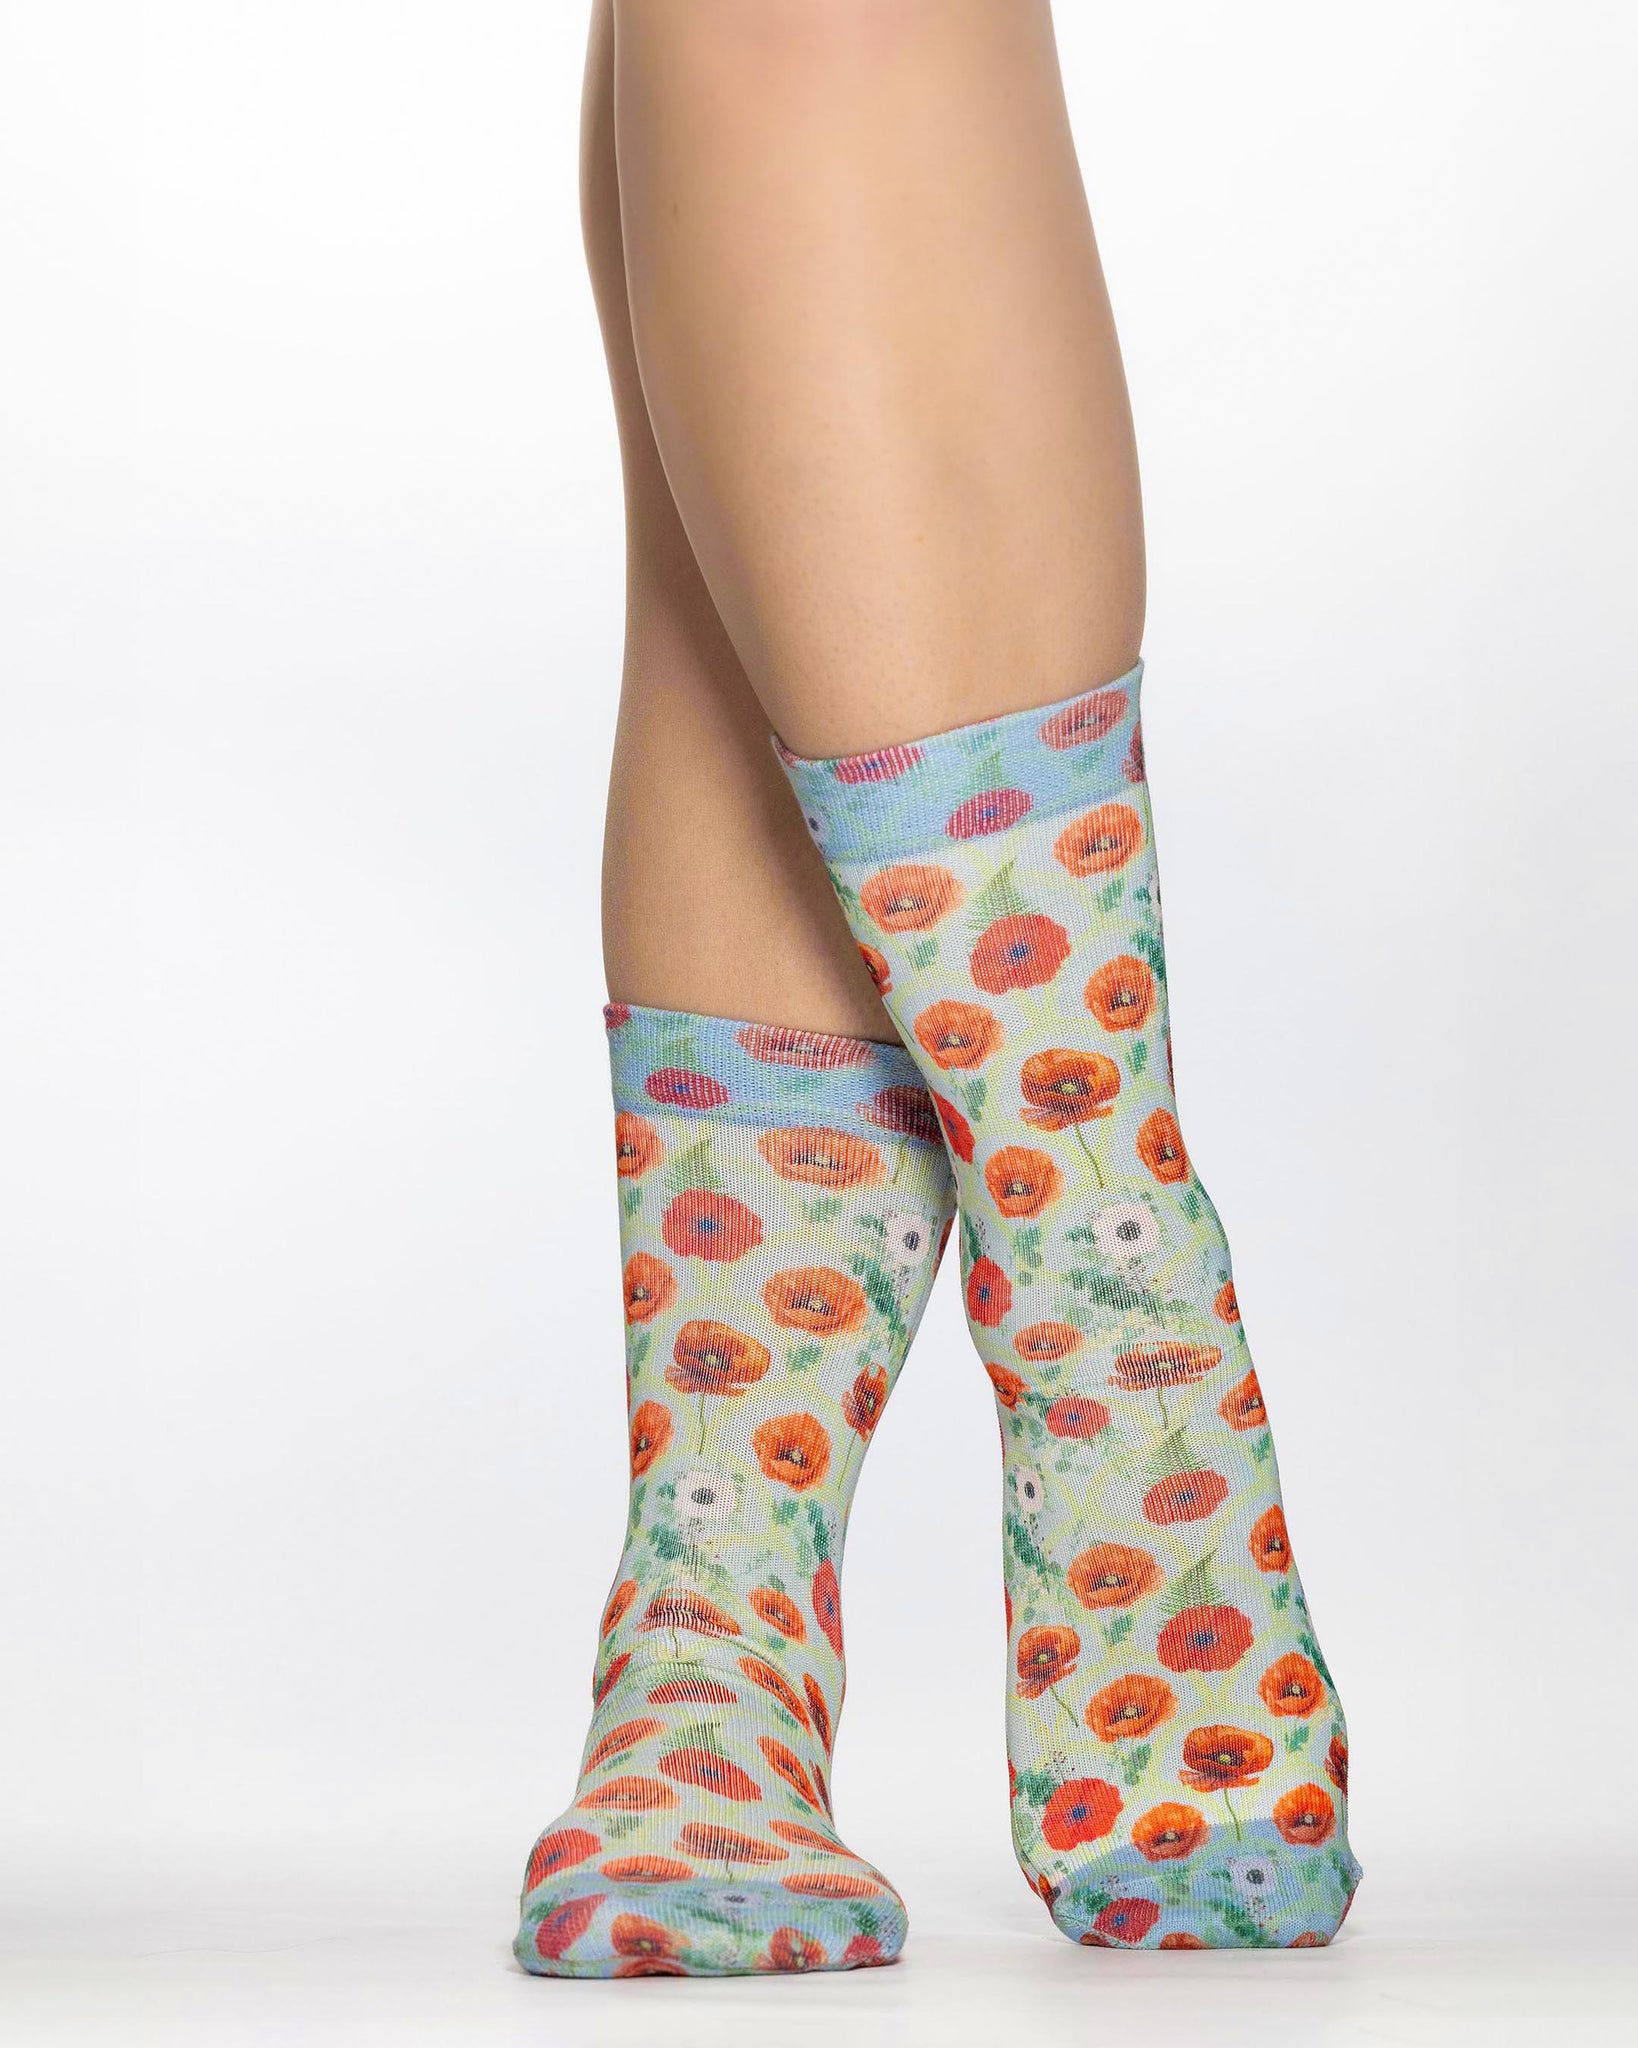 Poppy Lady Sock